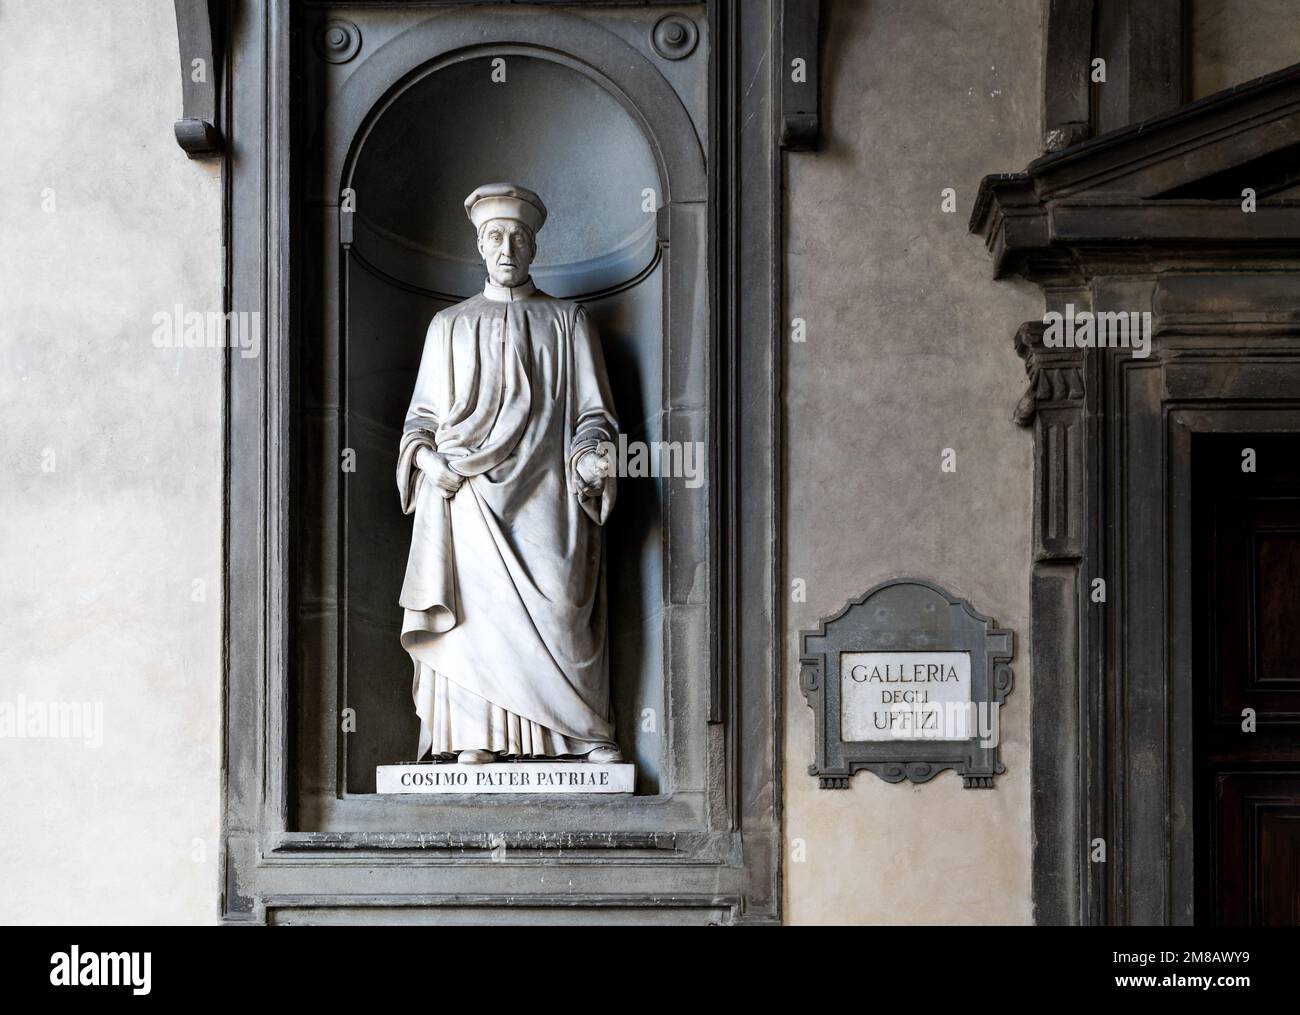 Statue of Cosimo de Medici Pater Patriae, Florentine statesman and politician in the 15th century, in a niche of the Loggiato of the Uffizi, Florence Stock Photo